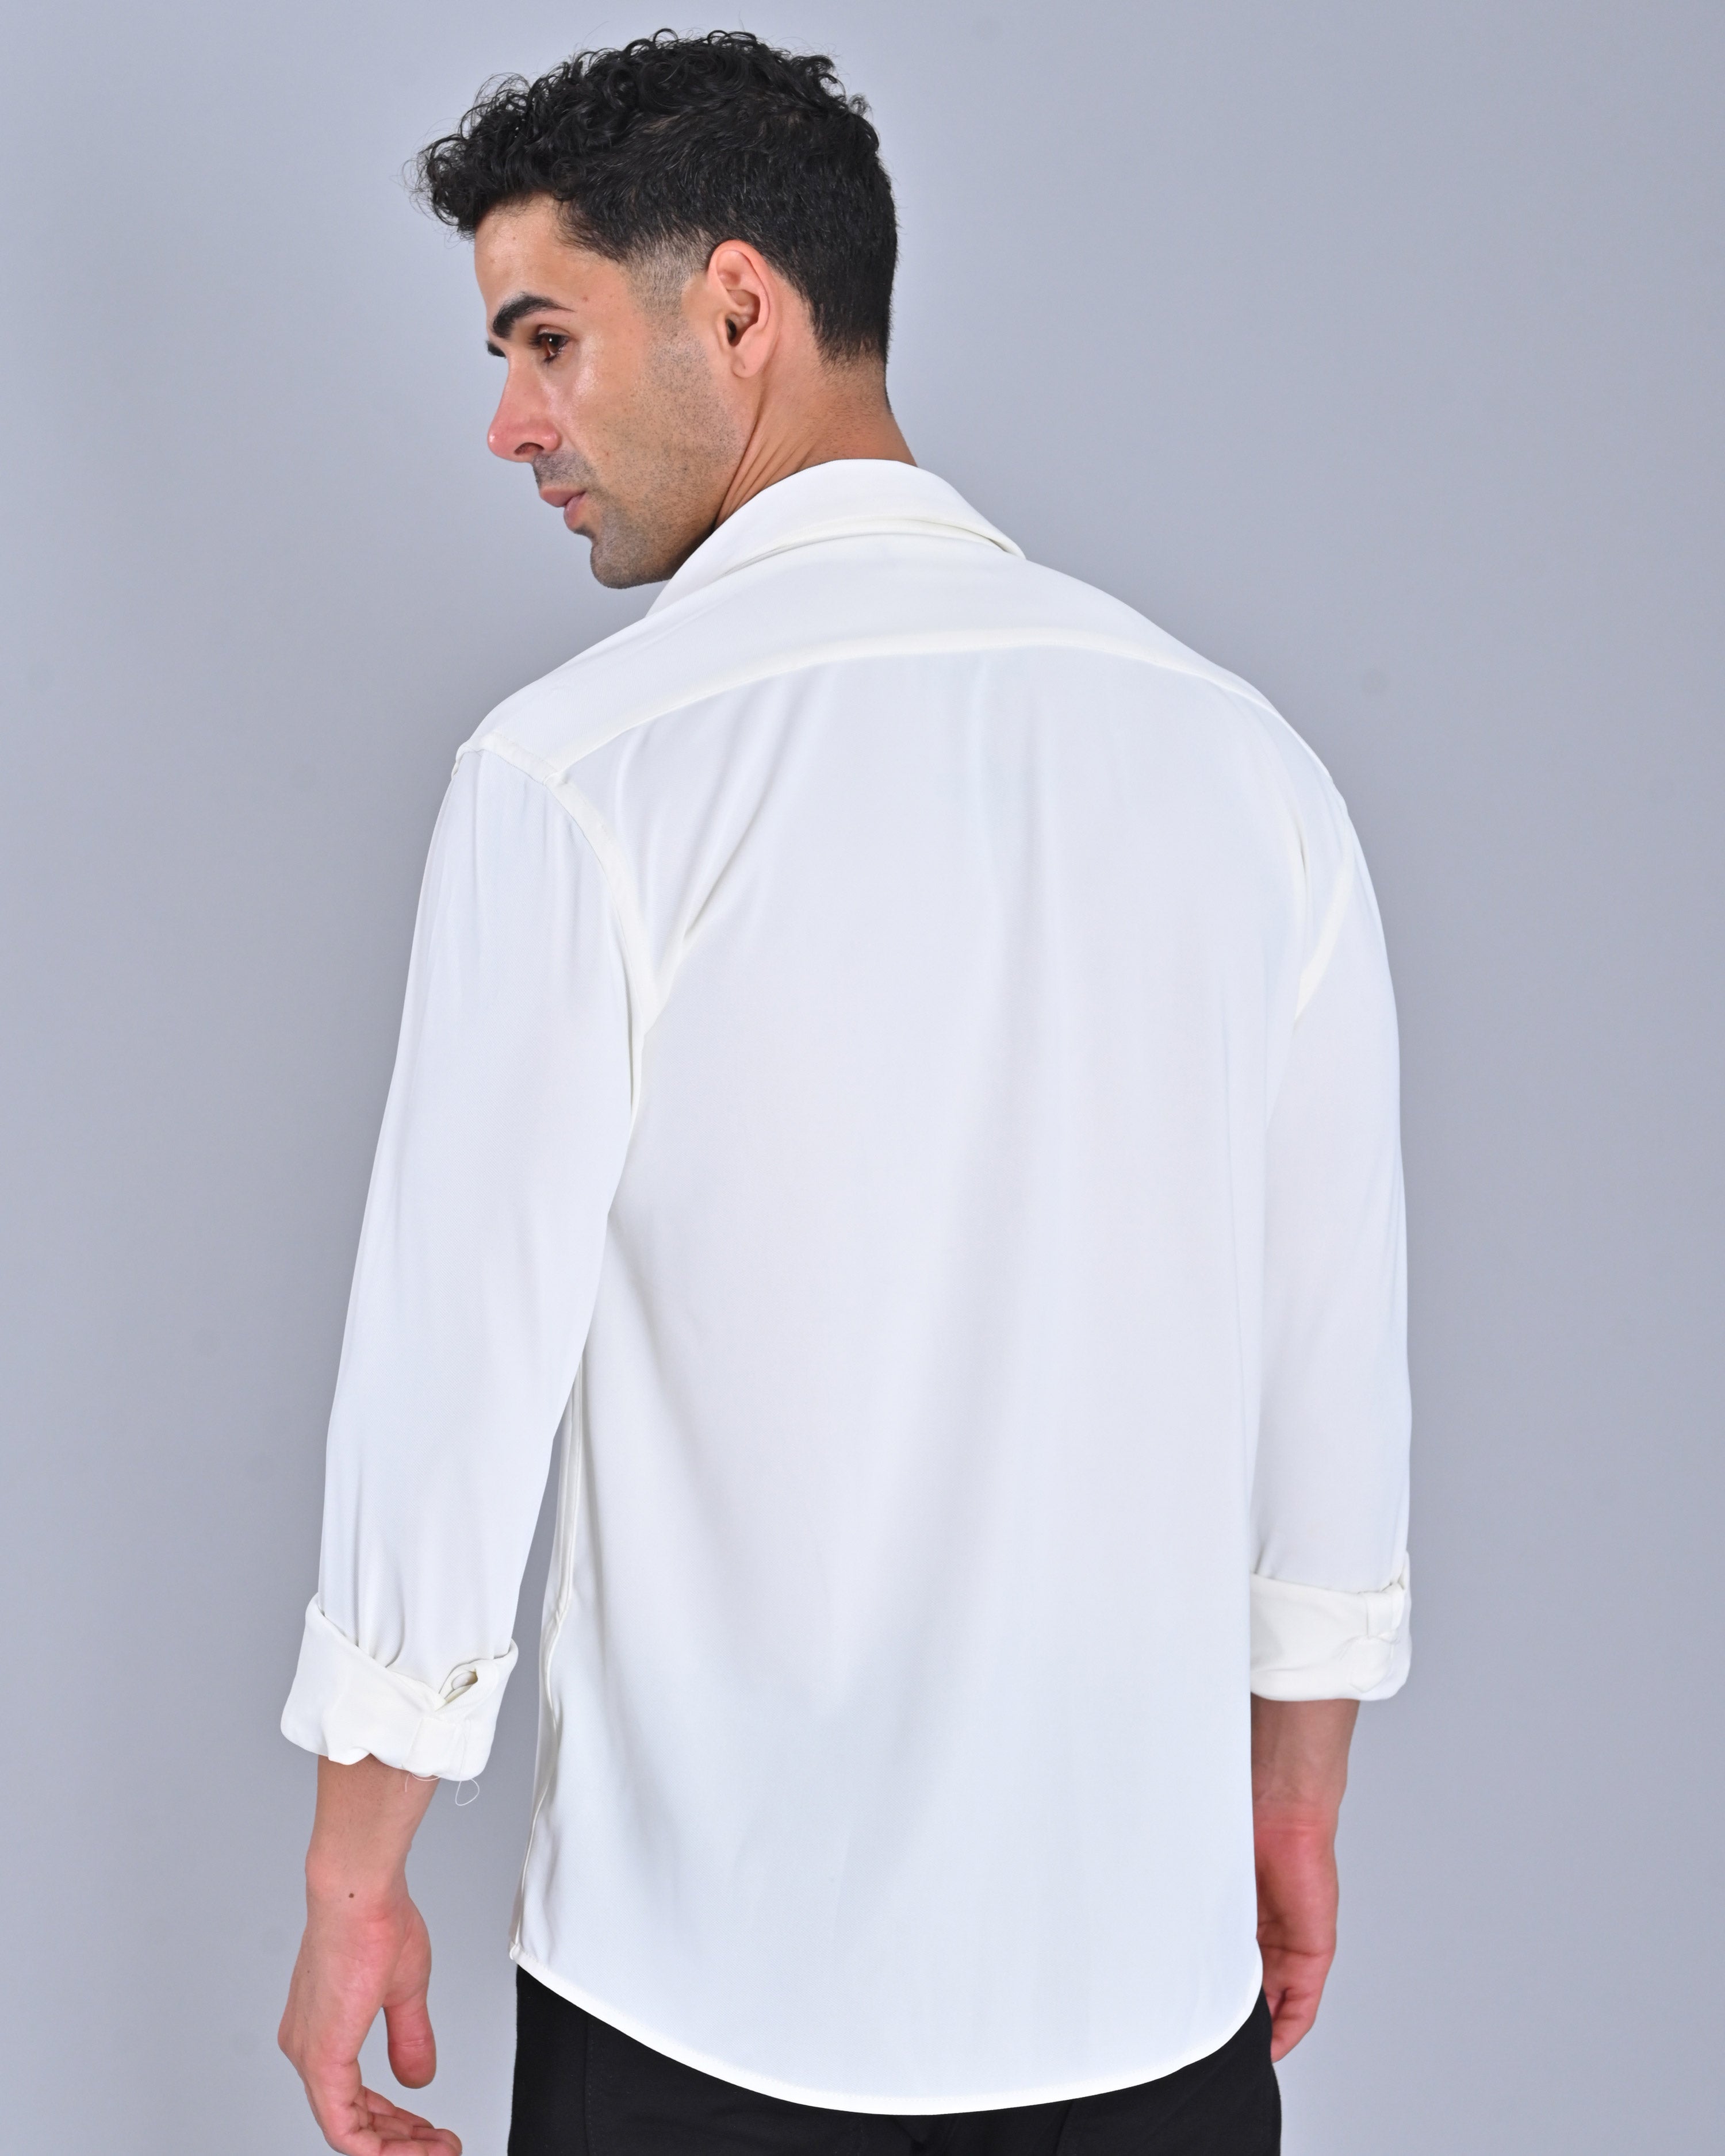 Nativebull Men's Solid Classic White Colour Shirt